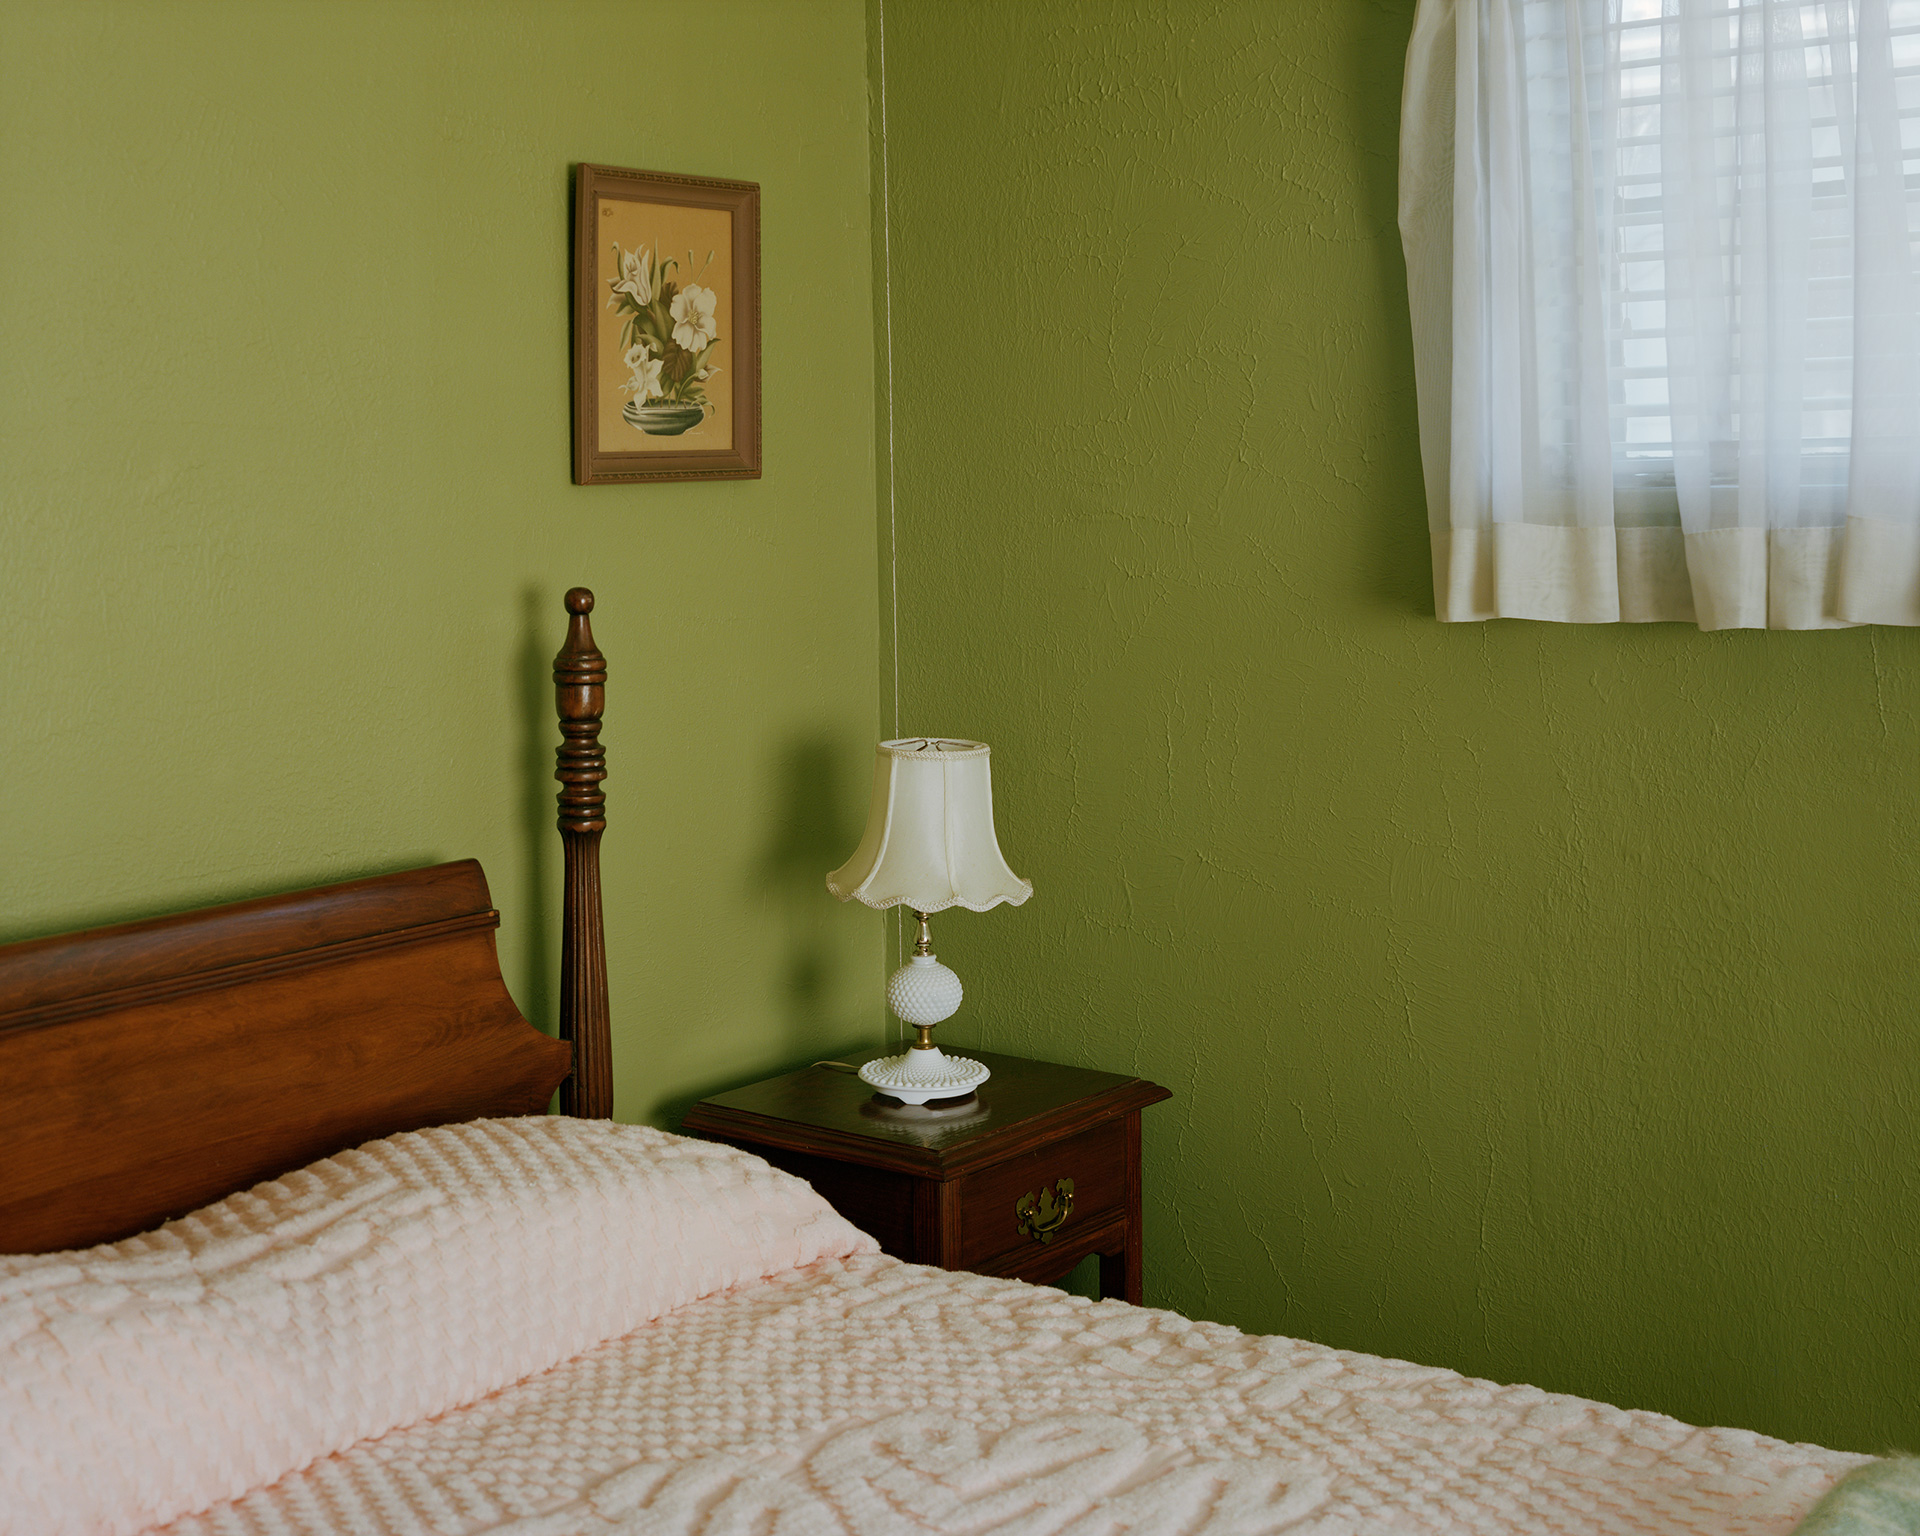 Medgar Evers' bedroom, Jackson, Mississippi